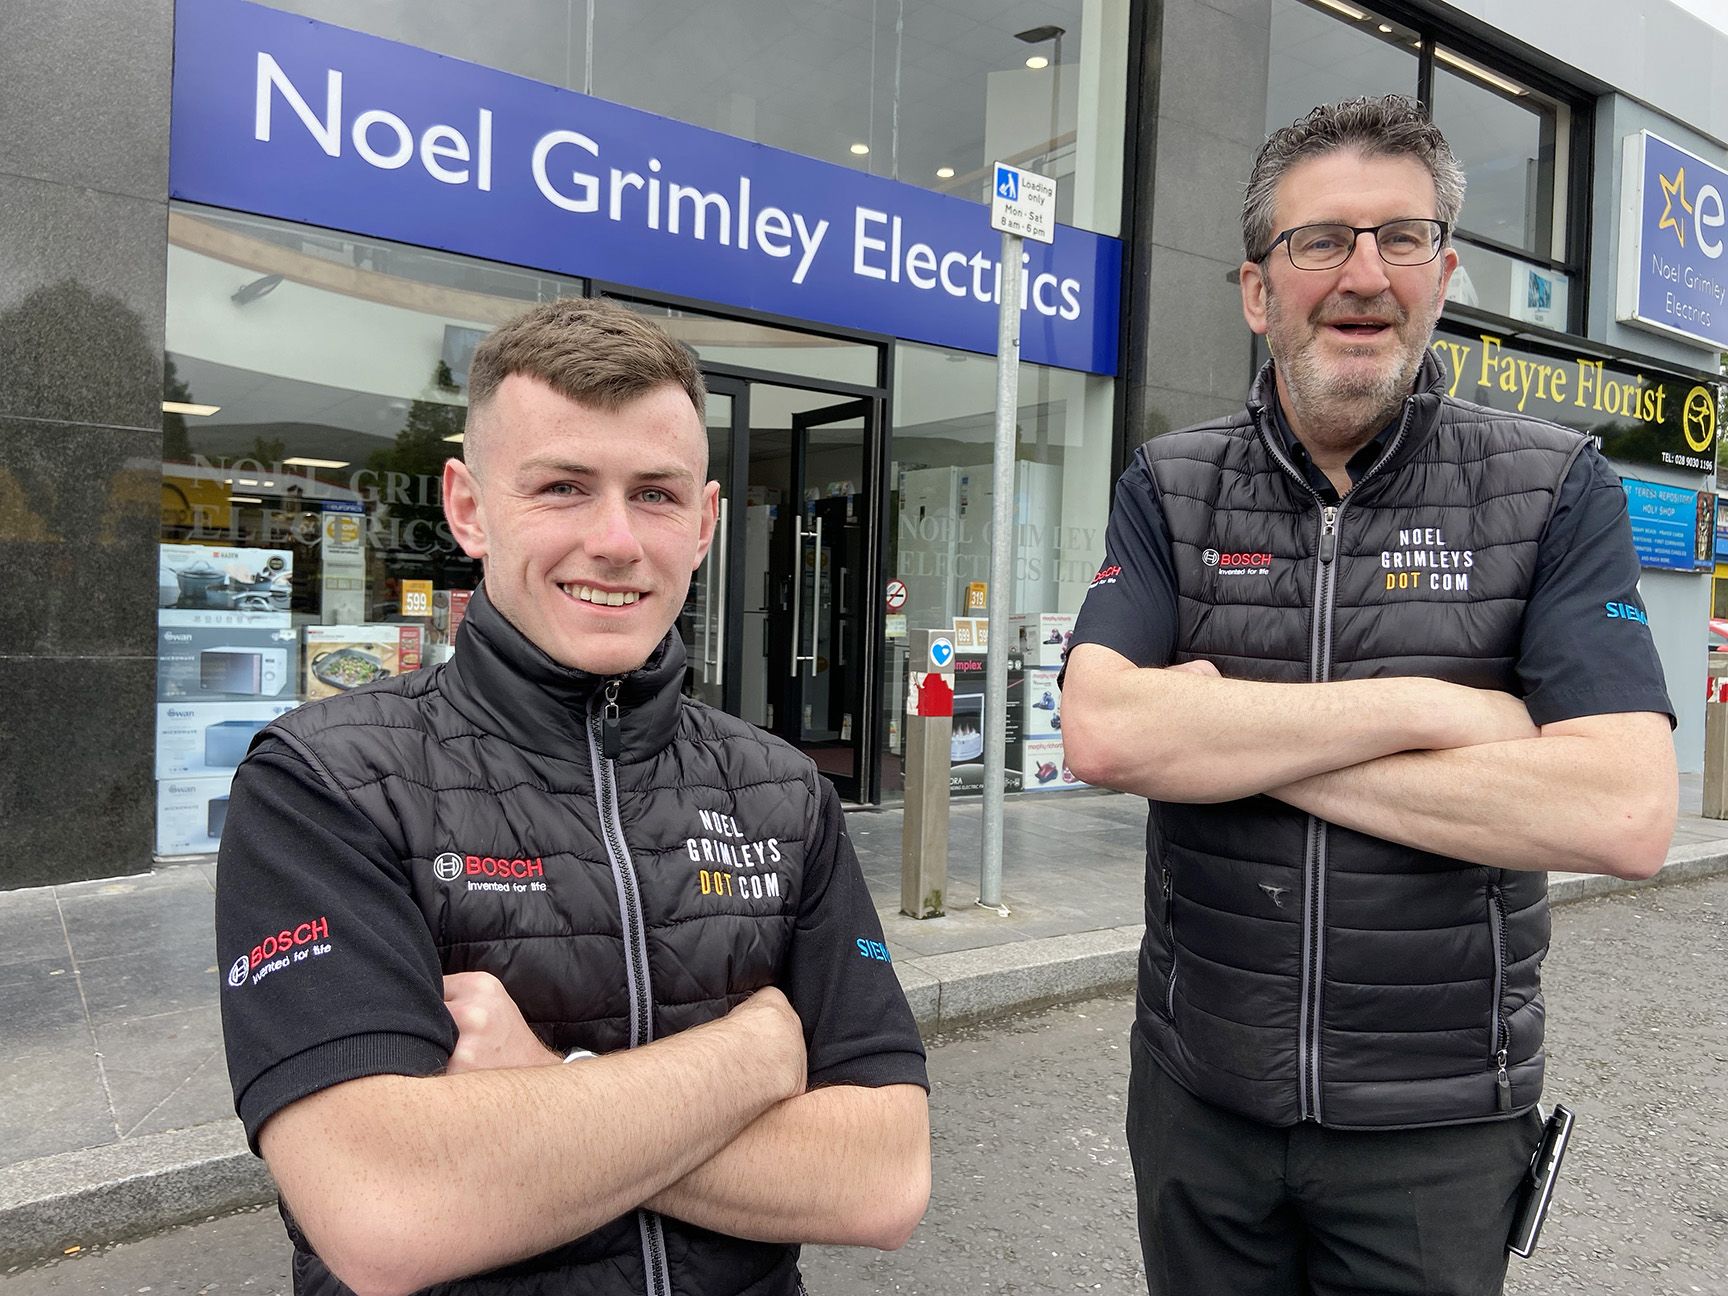 Noel Grimley Electrics